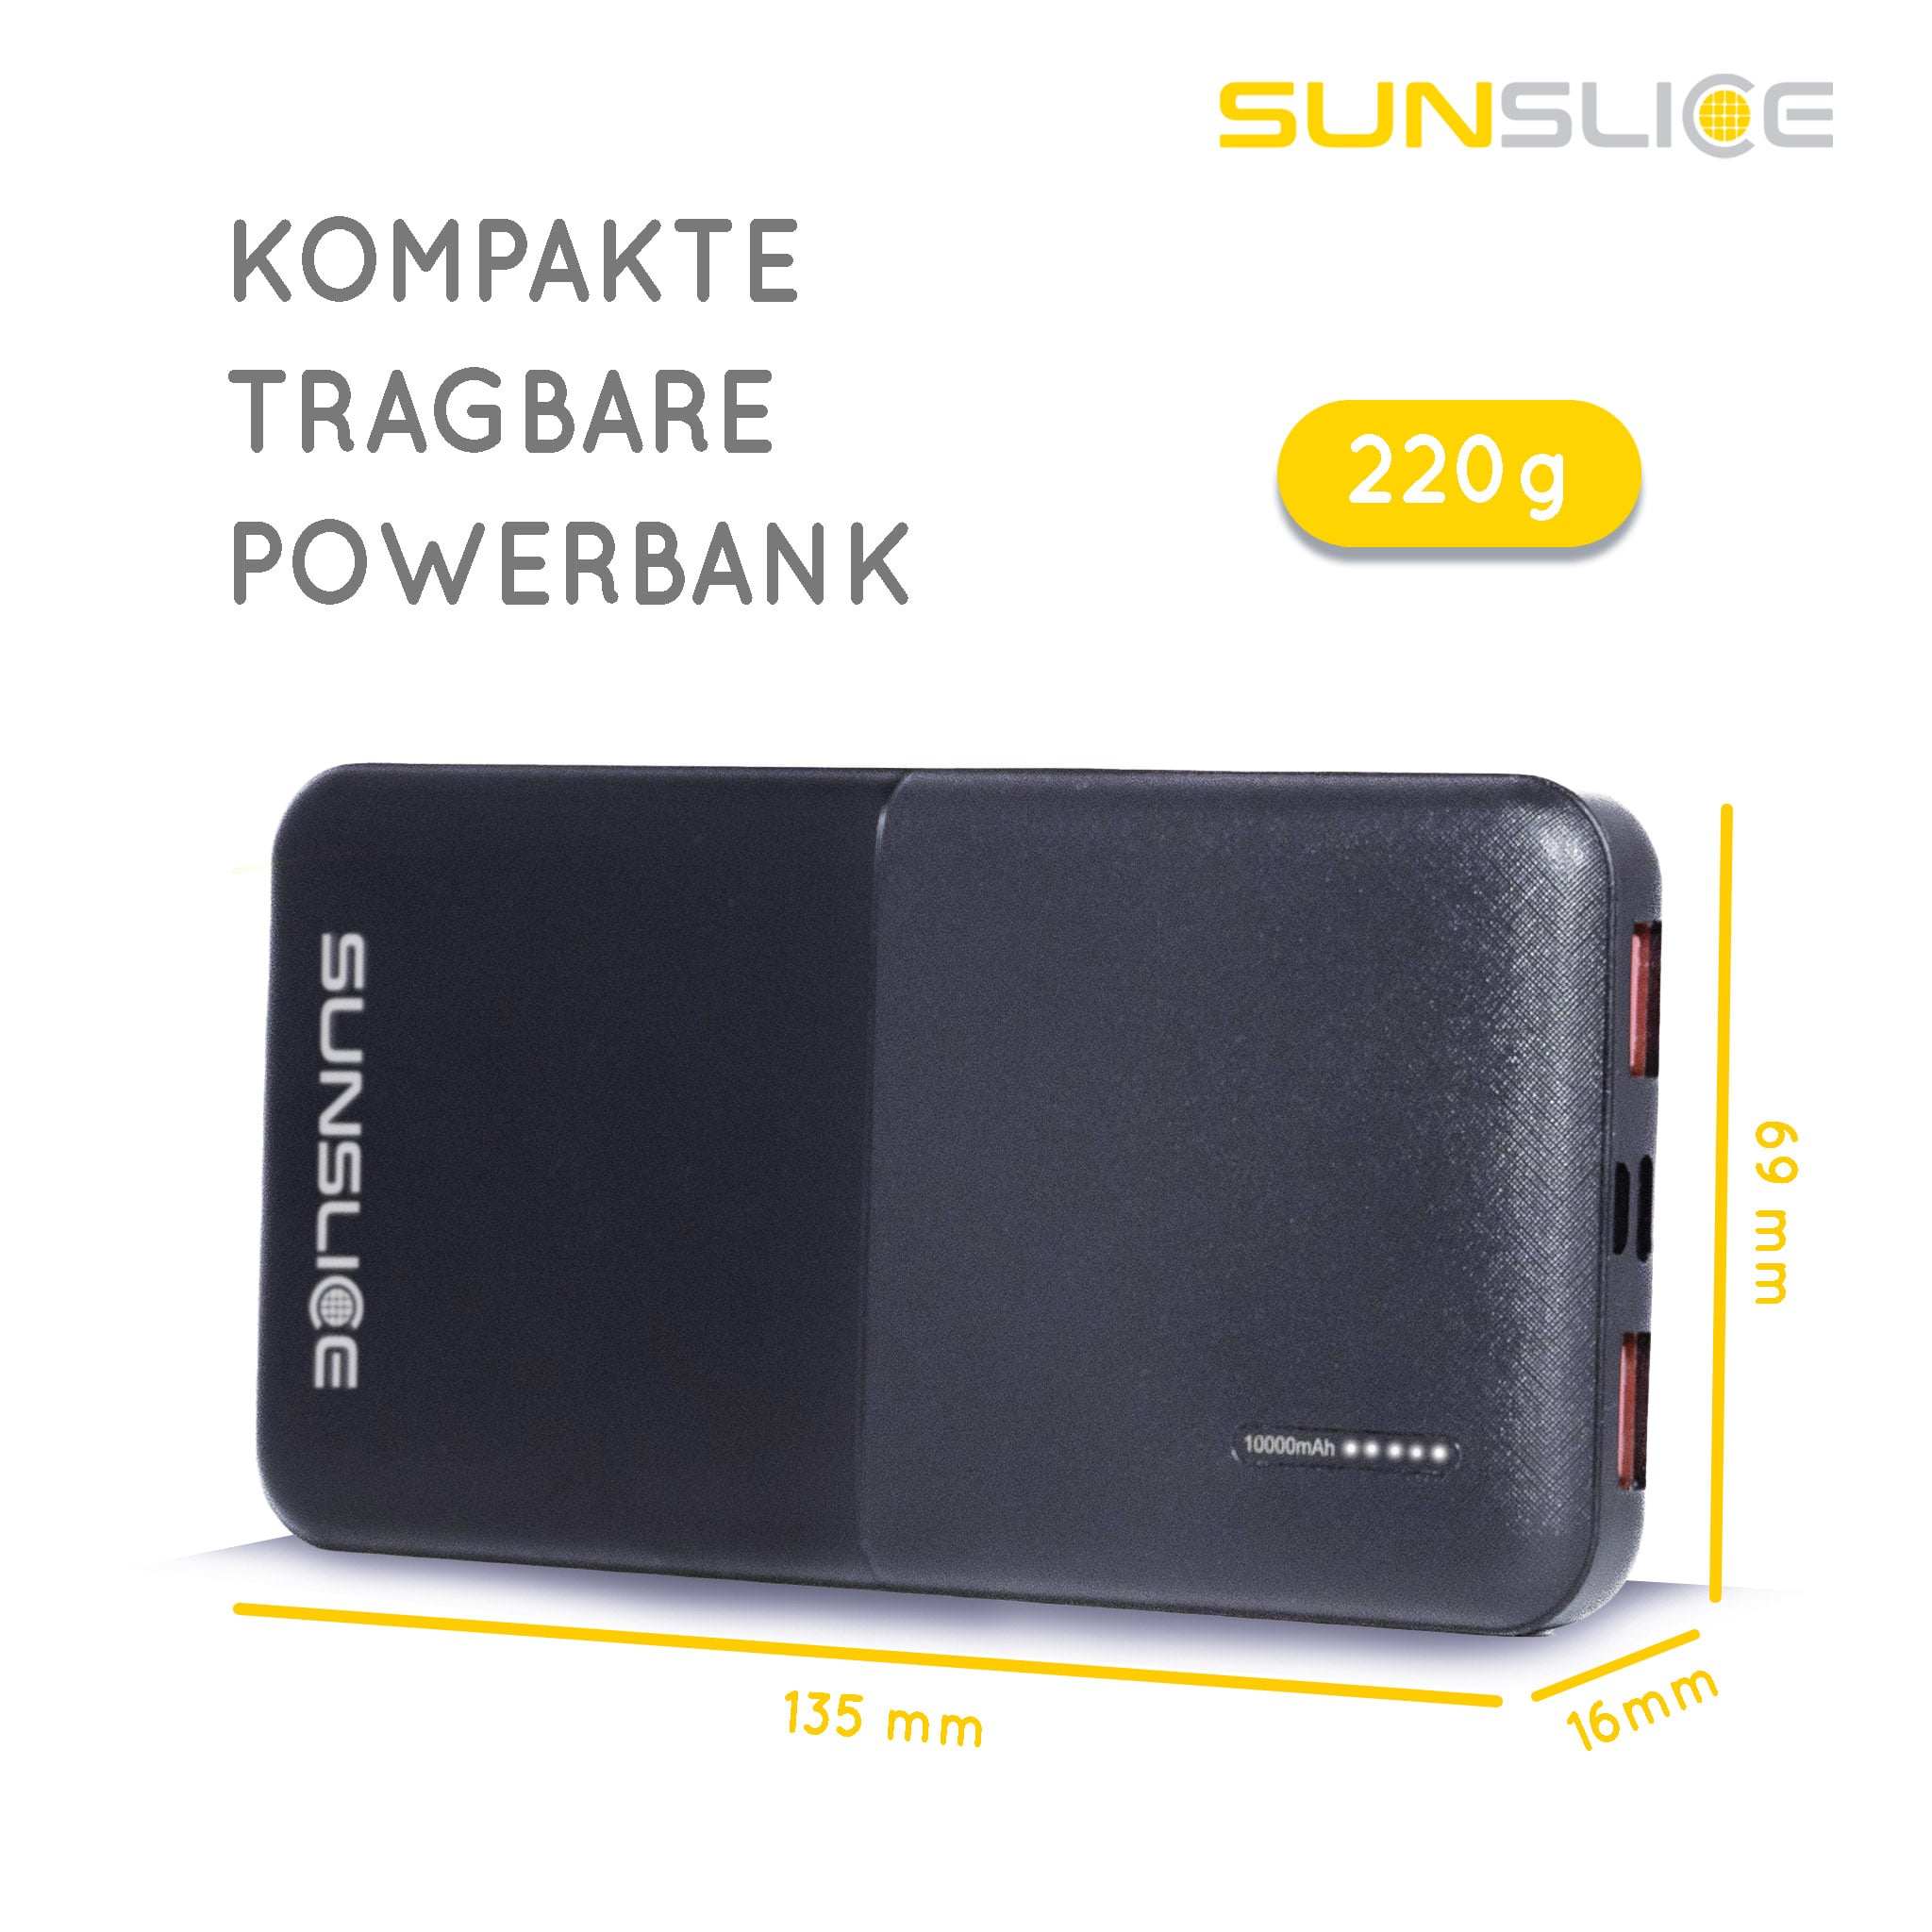 Powerbank (Gravity 10) Kompakt und tragbar. Größe: 135 mm, 69 mm, 16 mm. Gewicht: 220g